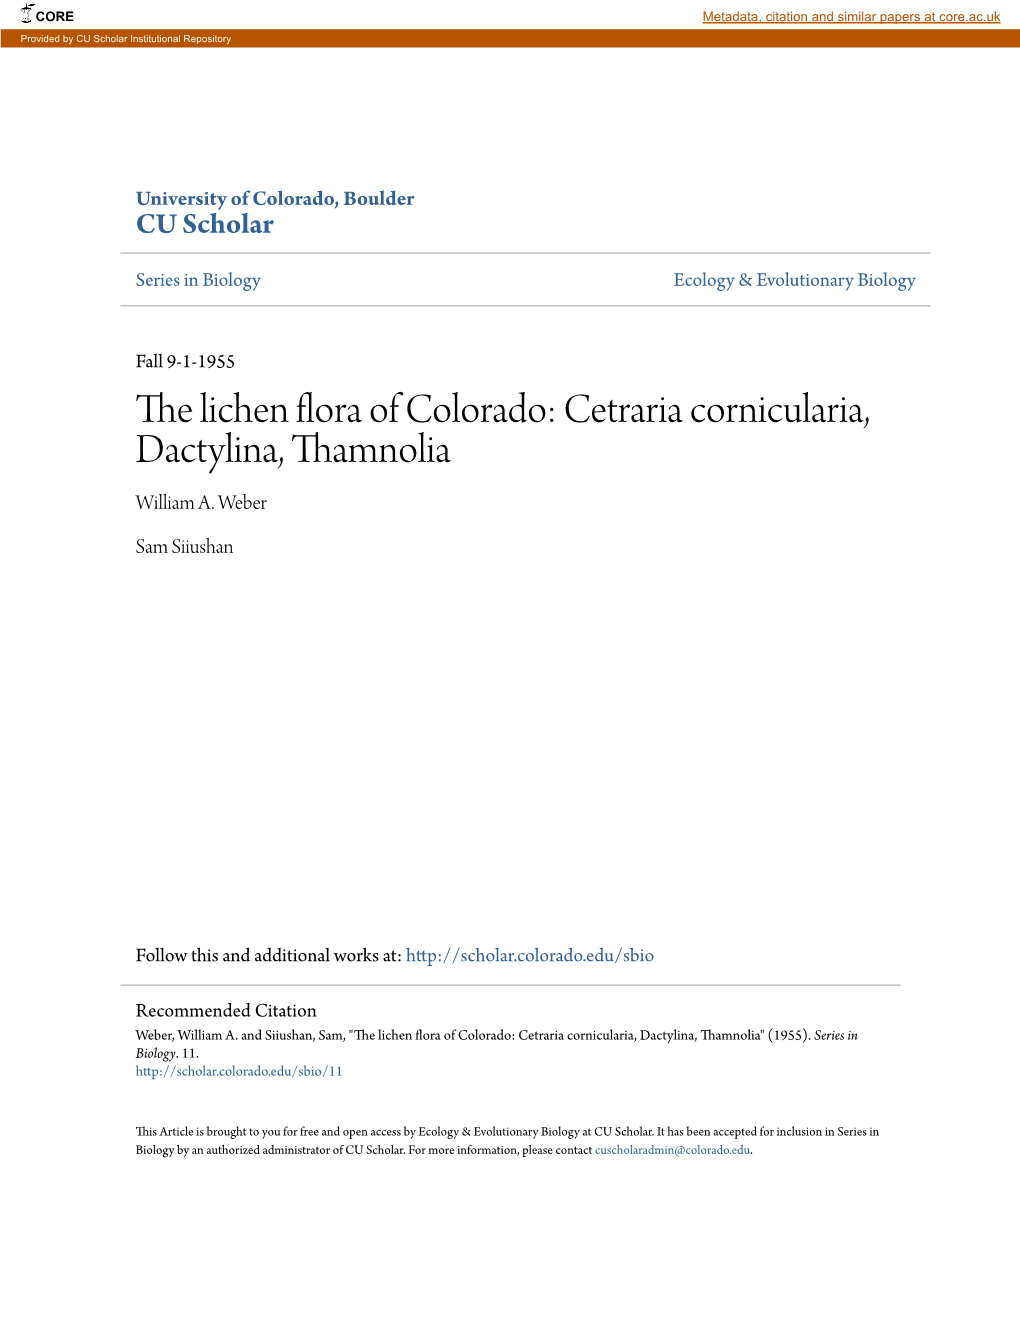 The Lichen Flora of Colorado: Cetraria Cornicularia, Dactylina, Thamnolia William A